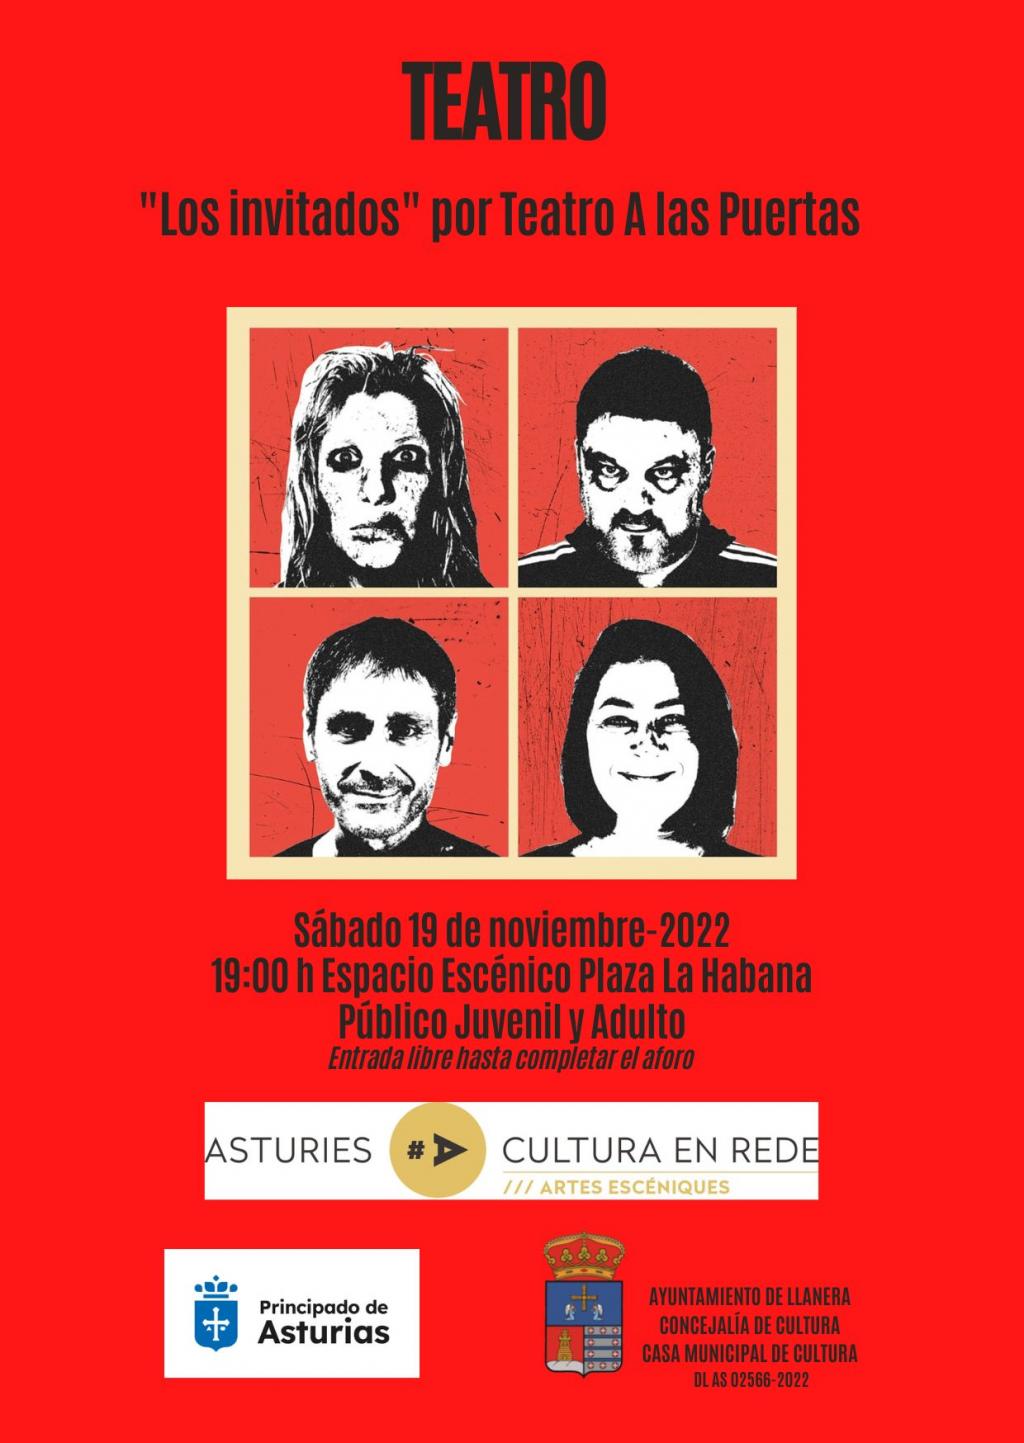 El Tapin - El Espacio Escénico Plaza La Habana acogerá la representación teatral "Los invitados" por Teatro A las Puertas